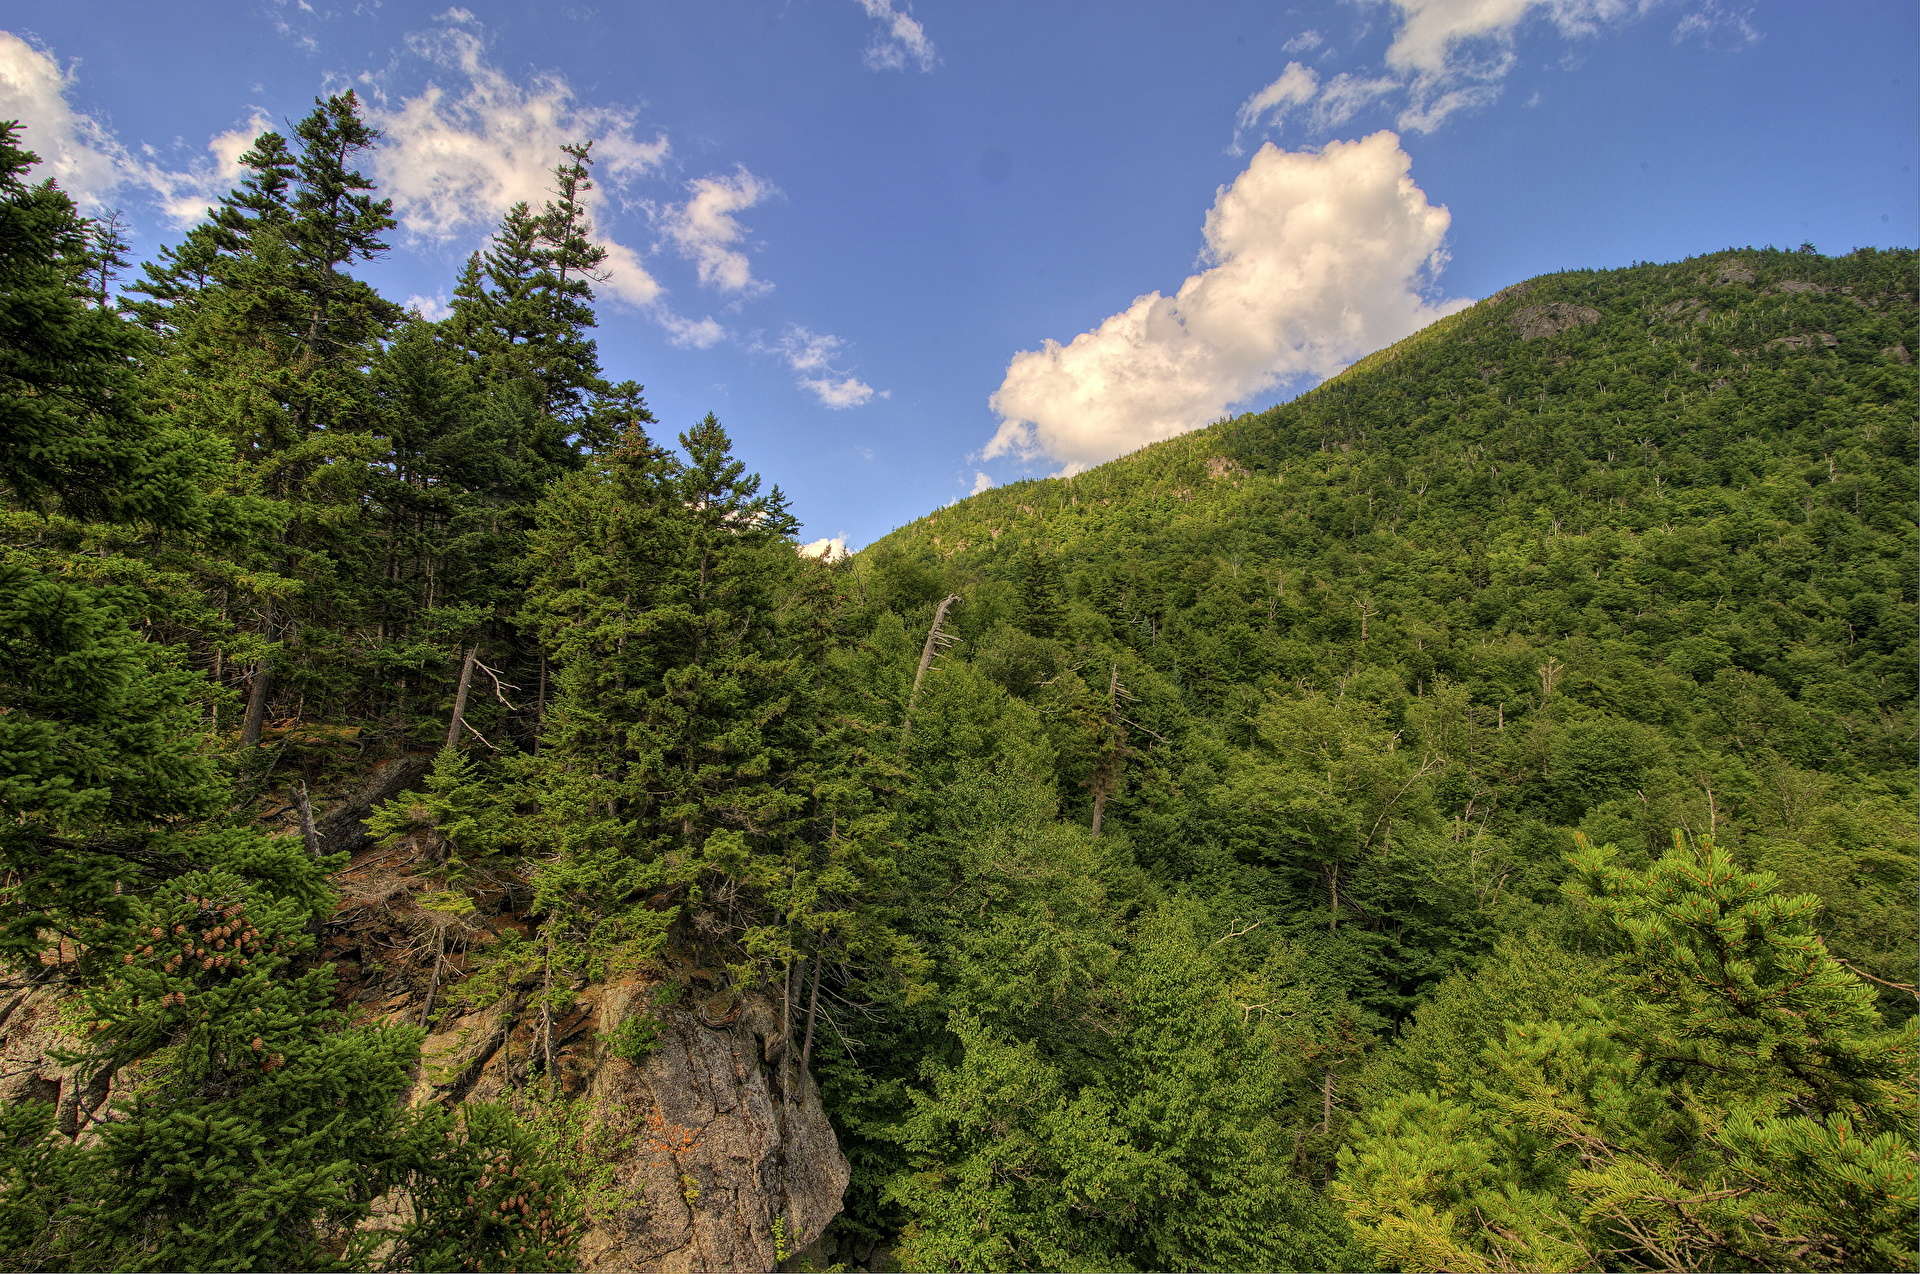 عکس جنگل کوهستانی سرسبز و انبوه درختان رایگان و با کیفیت بالا 